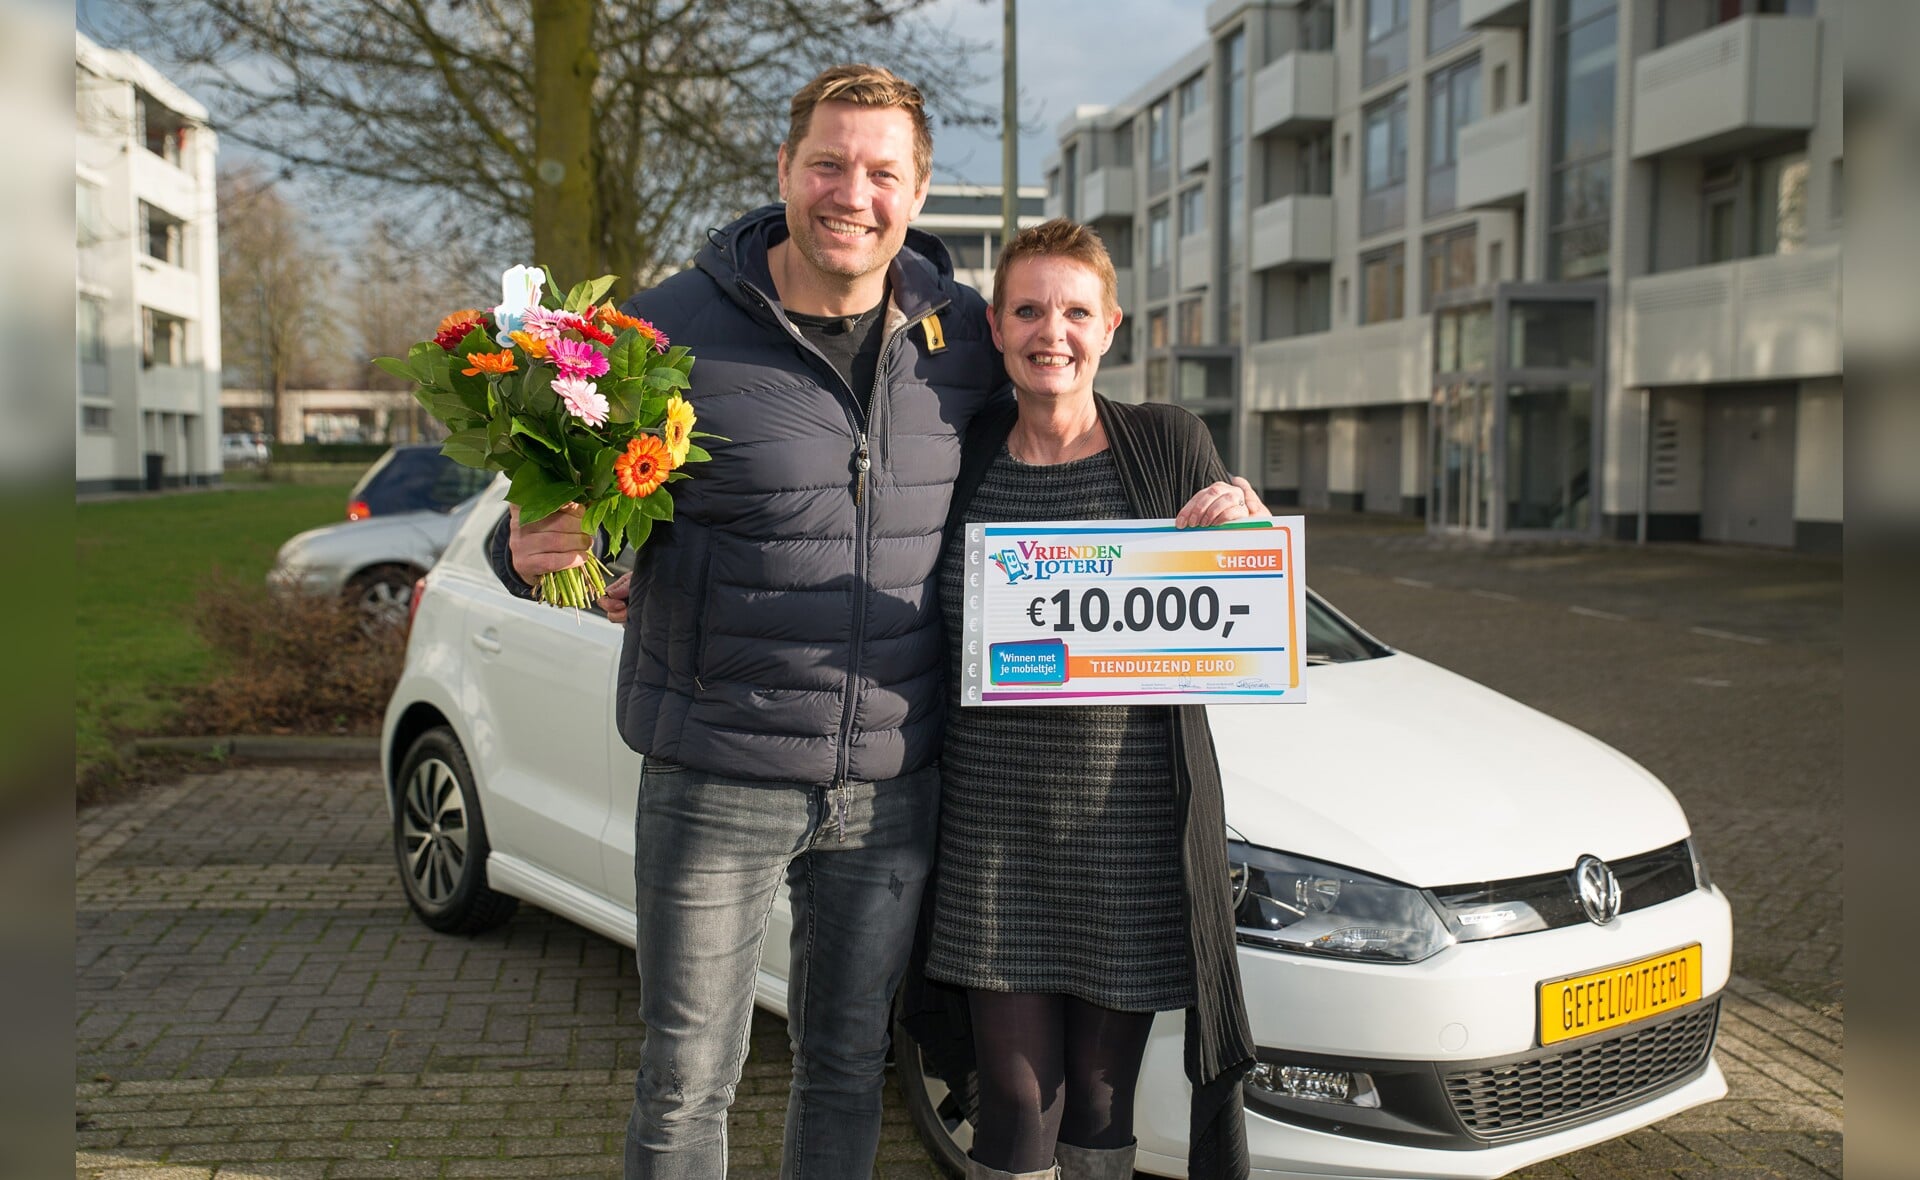 Marie-Louise uit Boxtel wint een Volkswagen Polo en 10.000 euro bij de VriendenLoterij. Zij ontvangt de prijs uit handen van VriendenLoterij-ambassadeur Dennis van der Geest.